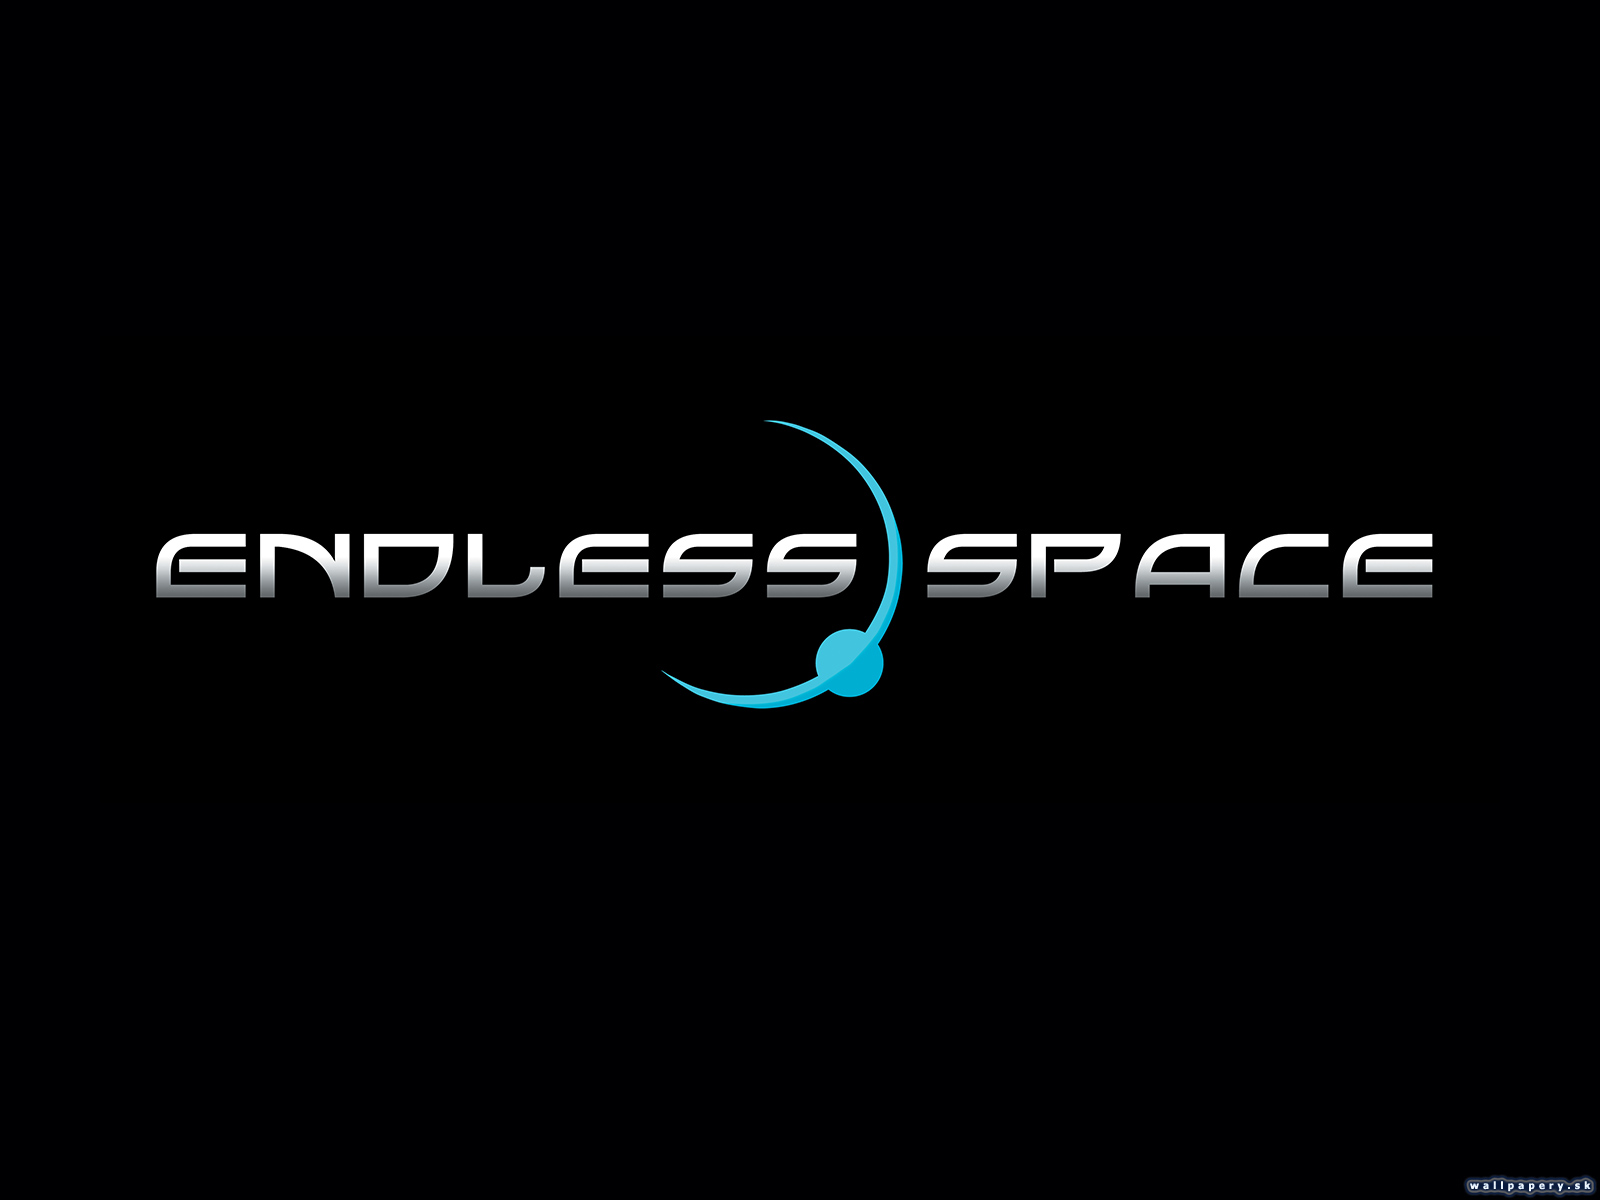 Endless Space - wallpaper 3